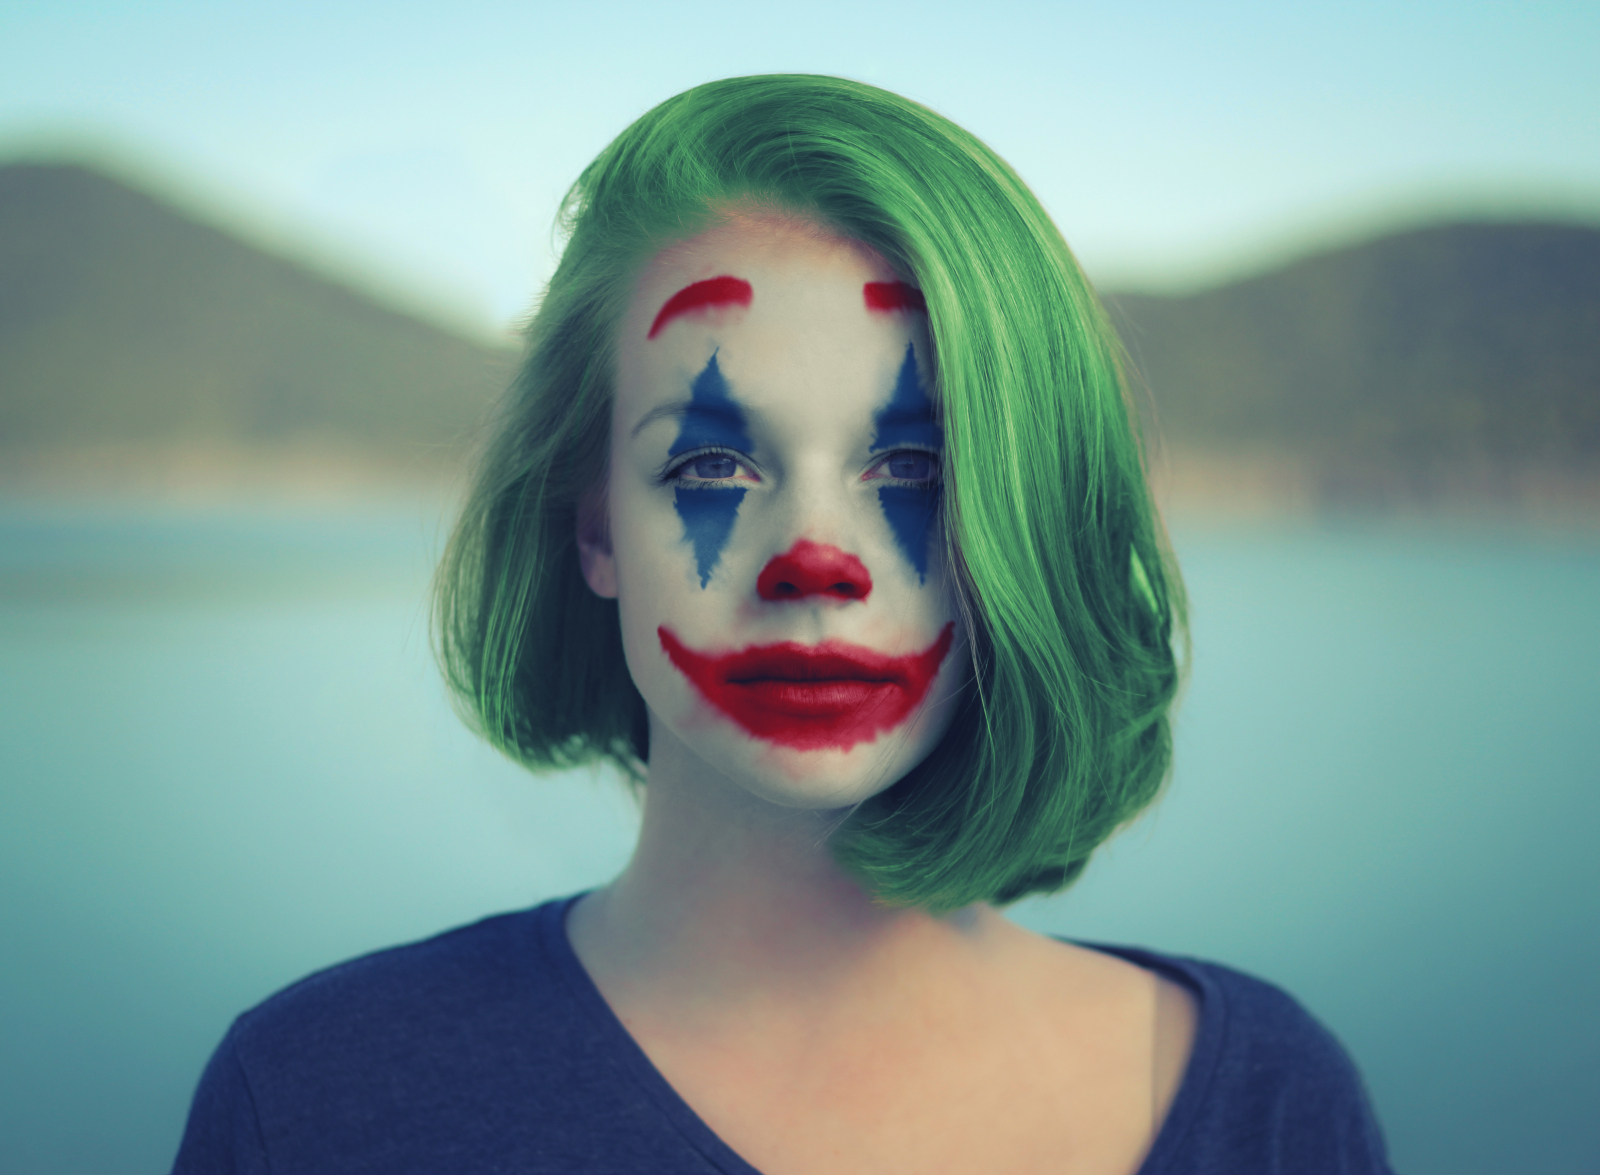 Joker Mask by bakhdesign on Dribbble